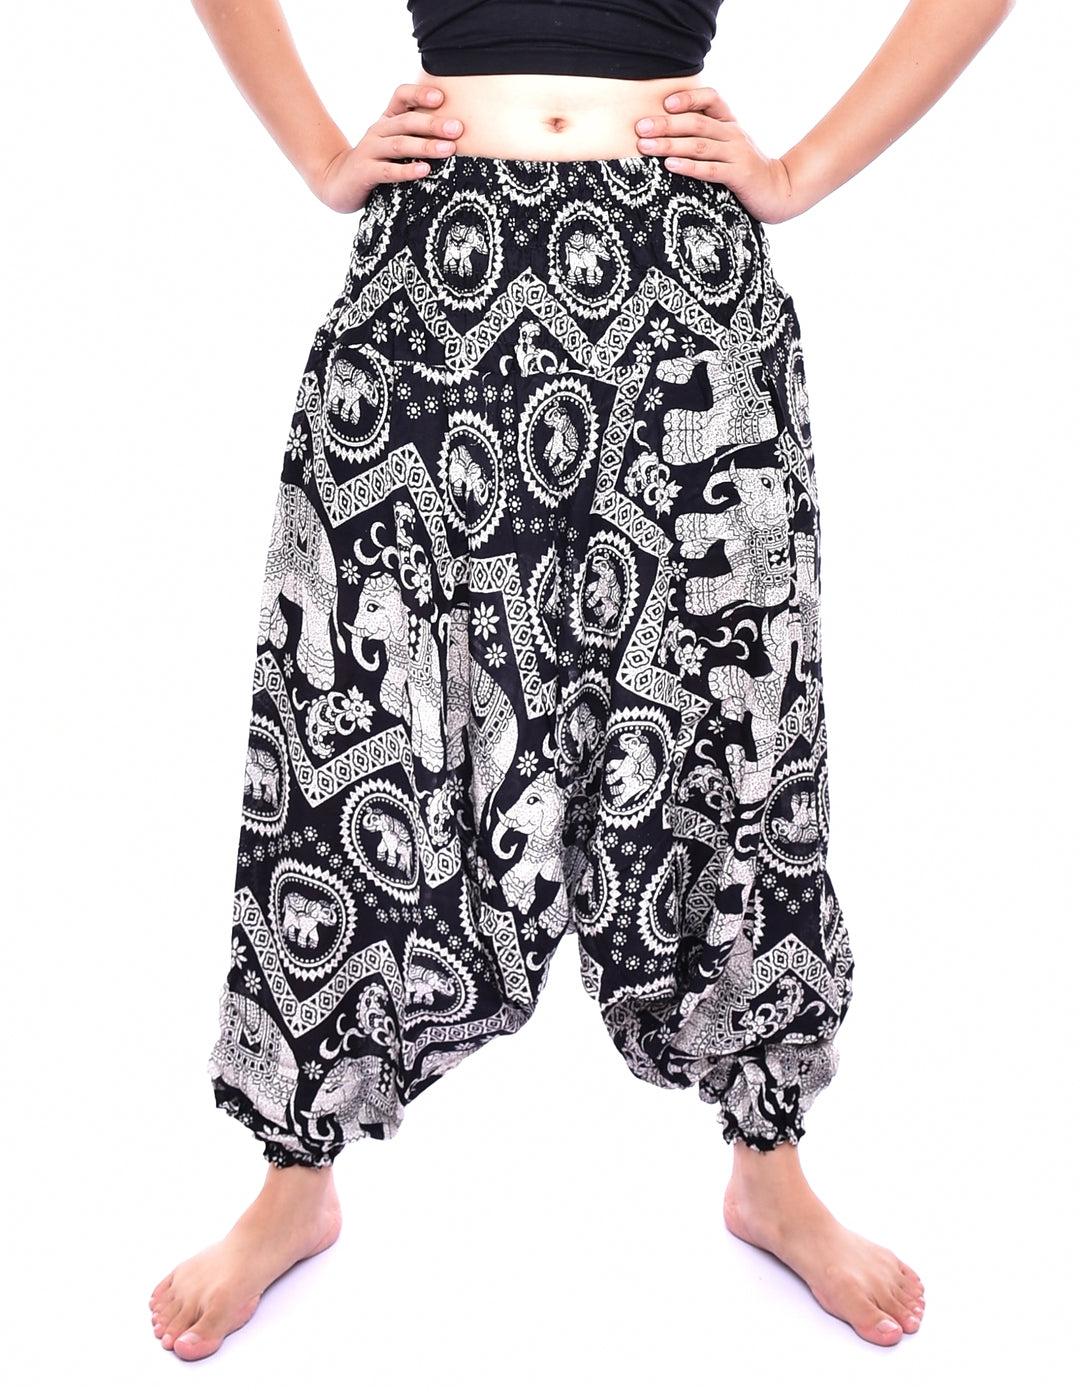 Bohotusk Black Elephant Print Low Crotch Harem Pants Womens Elasticated Smocked Waist S/M